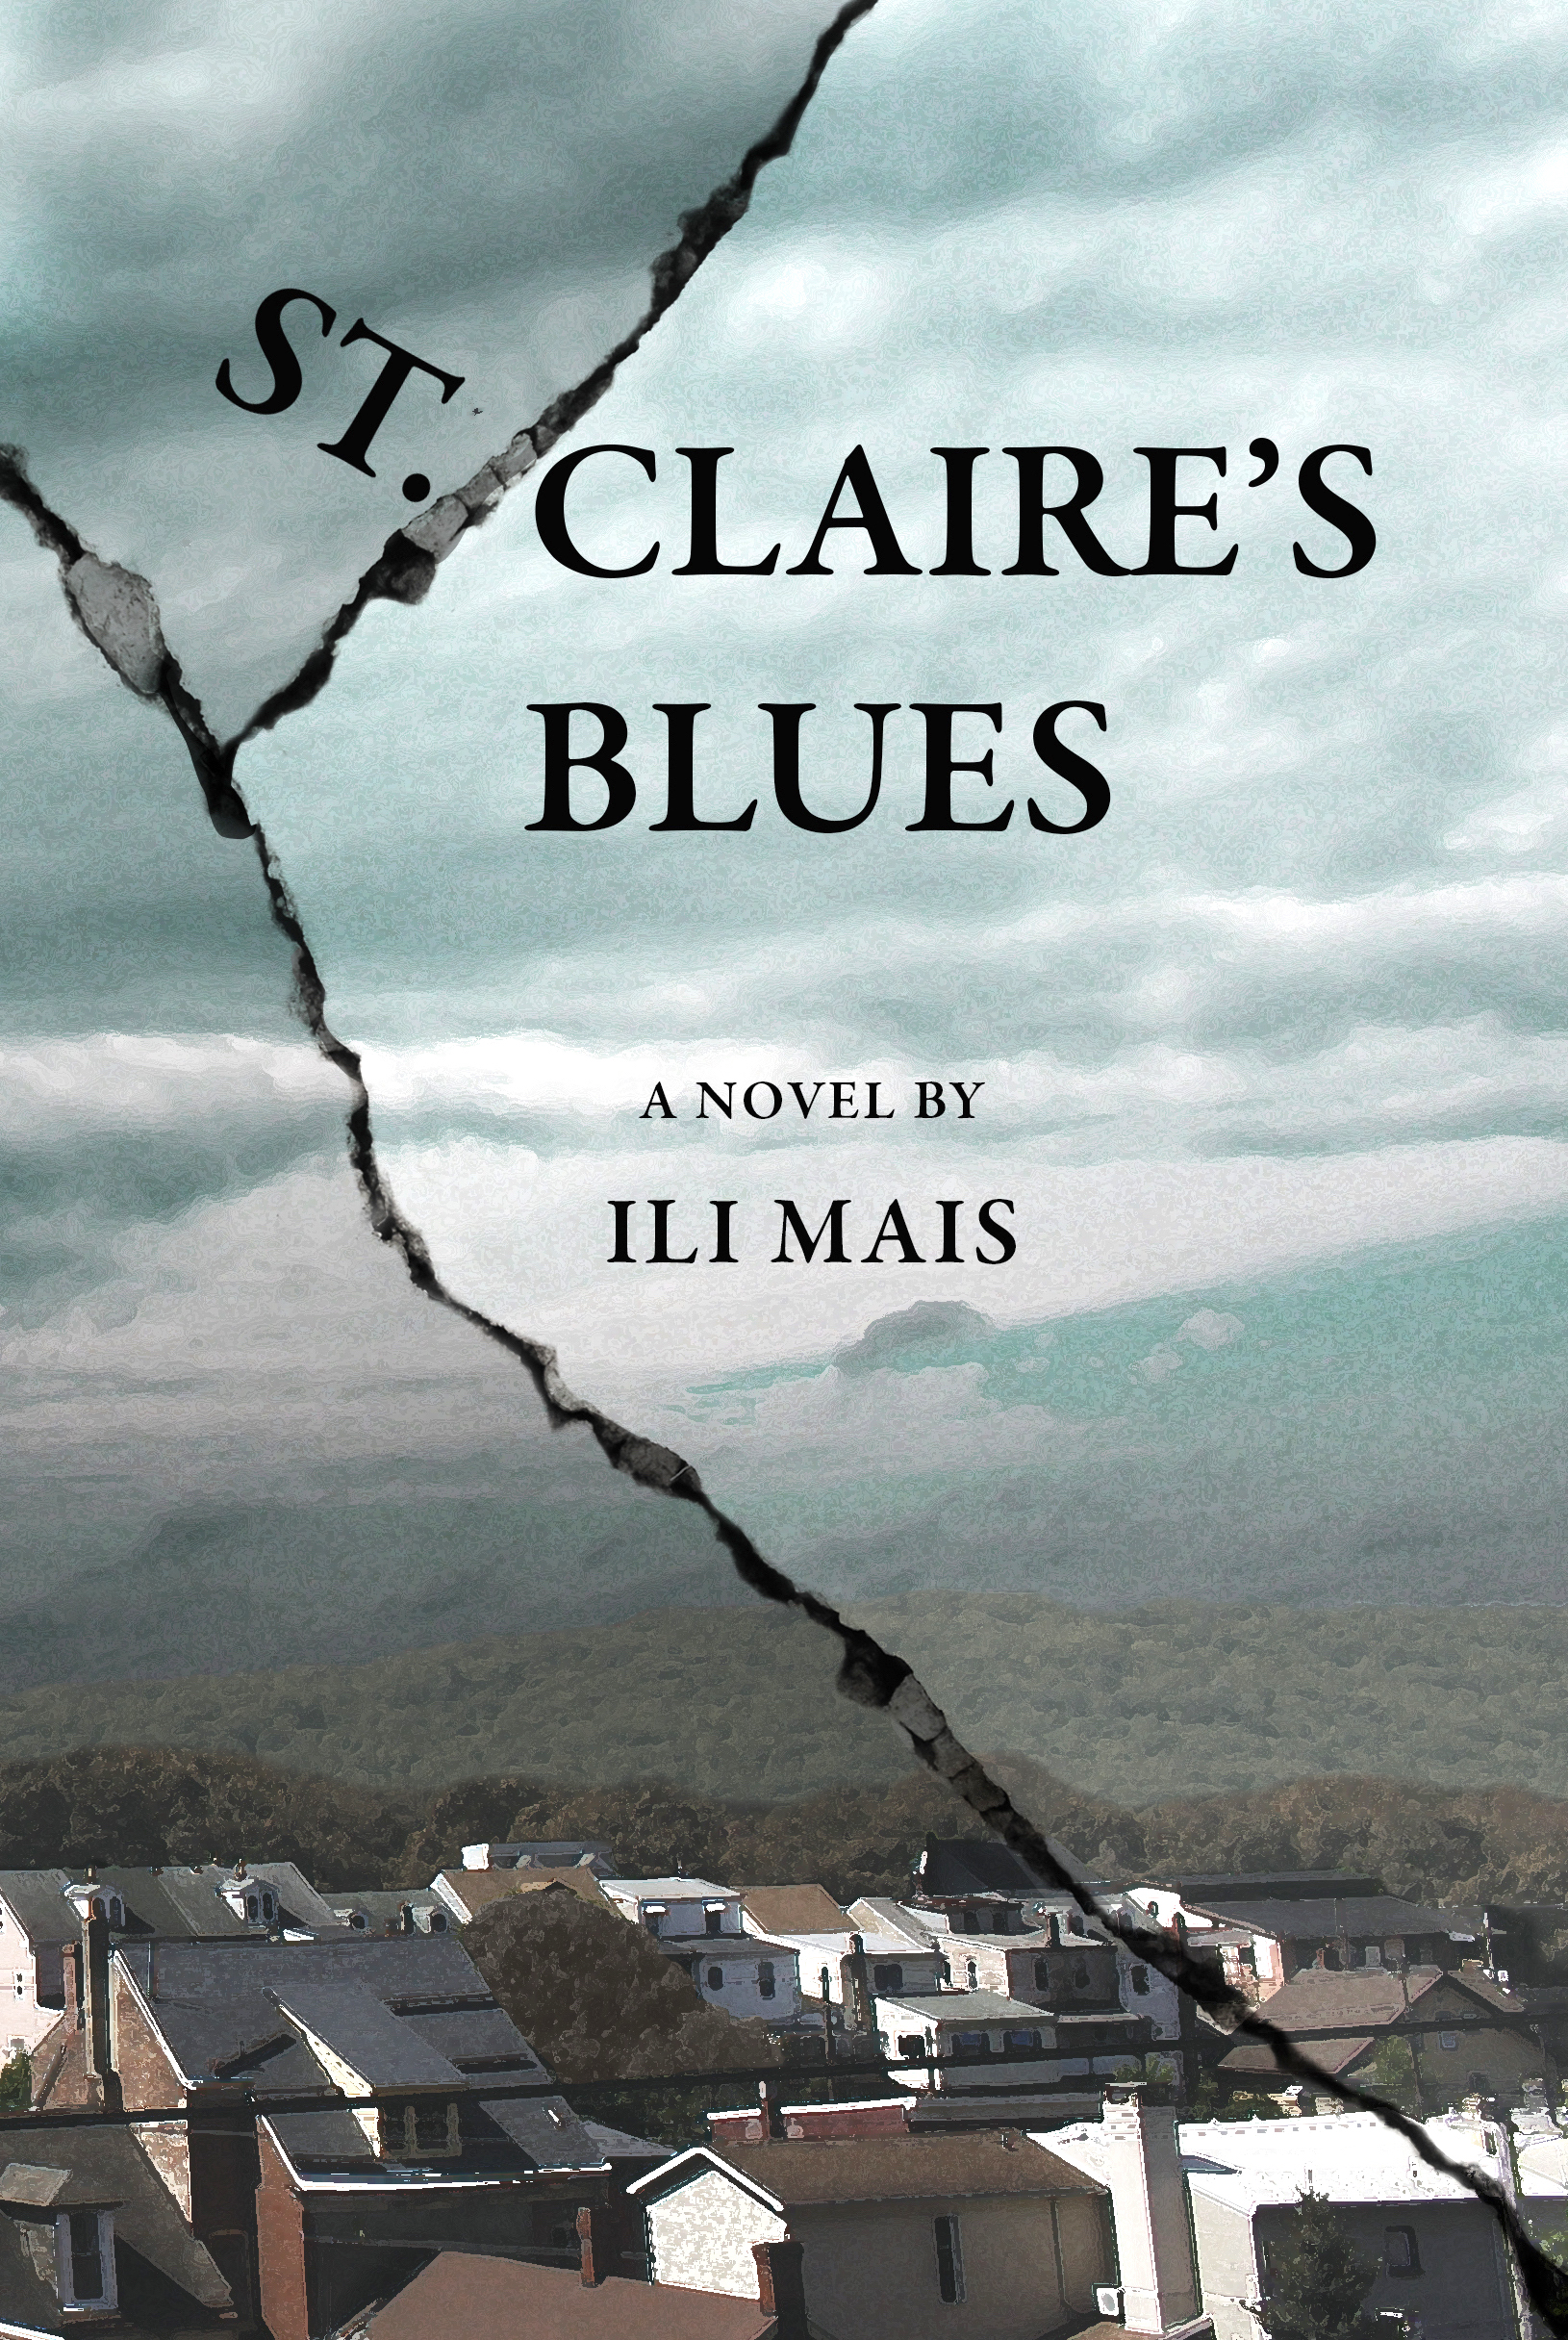 FREE: St. Claire’s Blues by Ili Mais